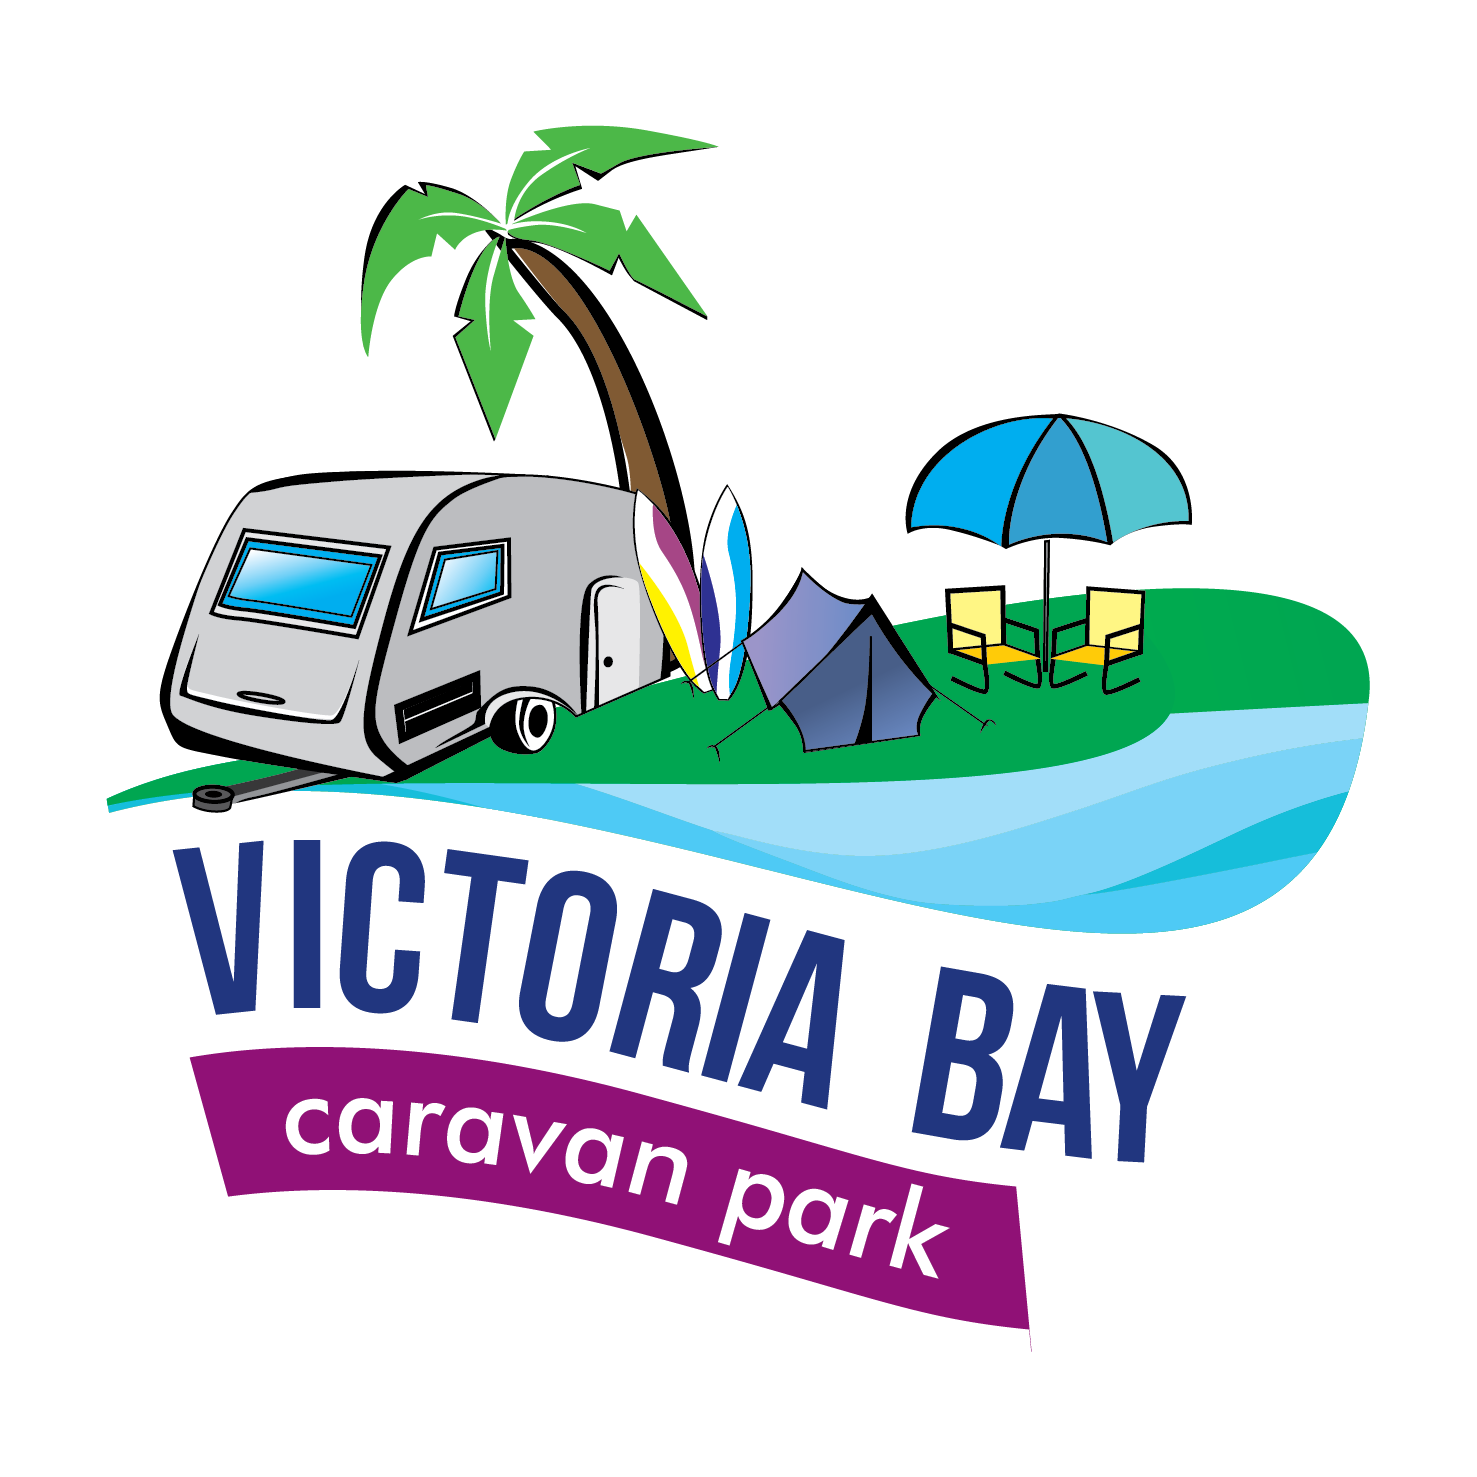 Victoria Bay Caravan Park